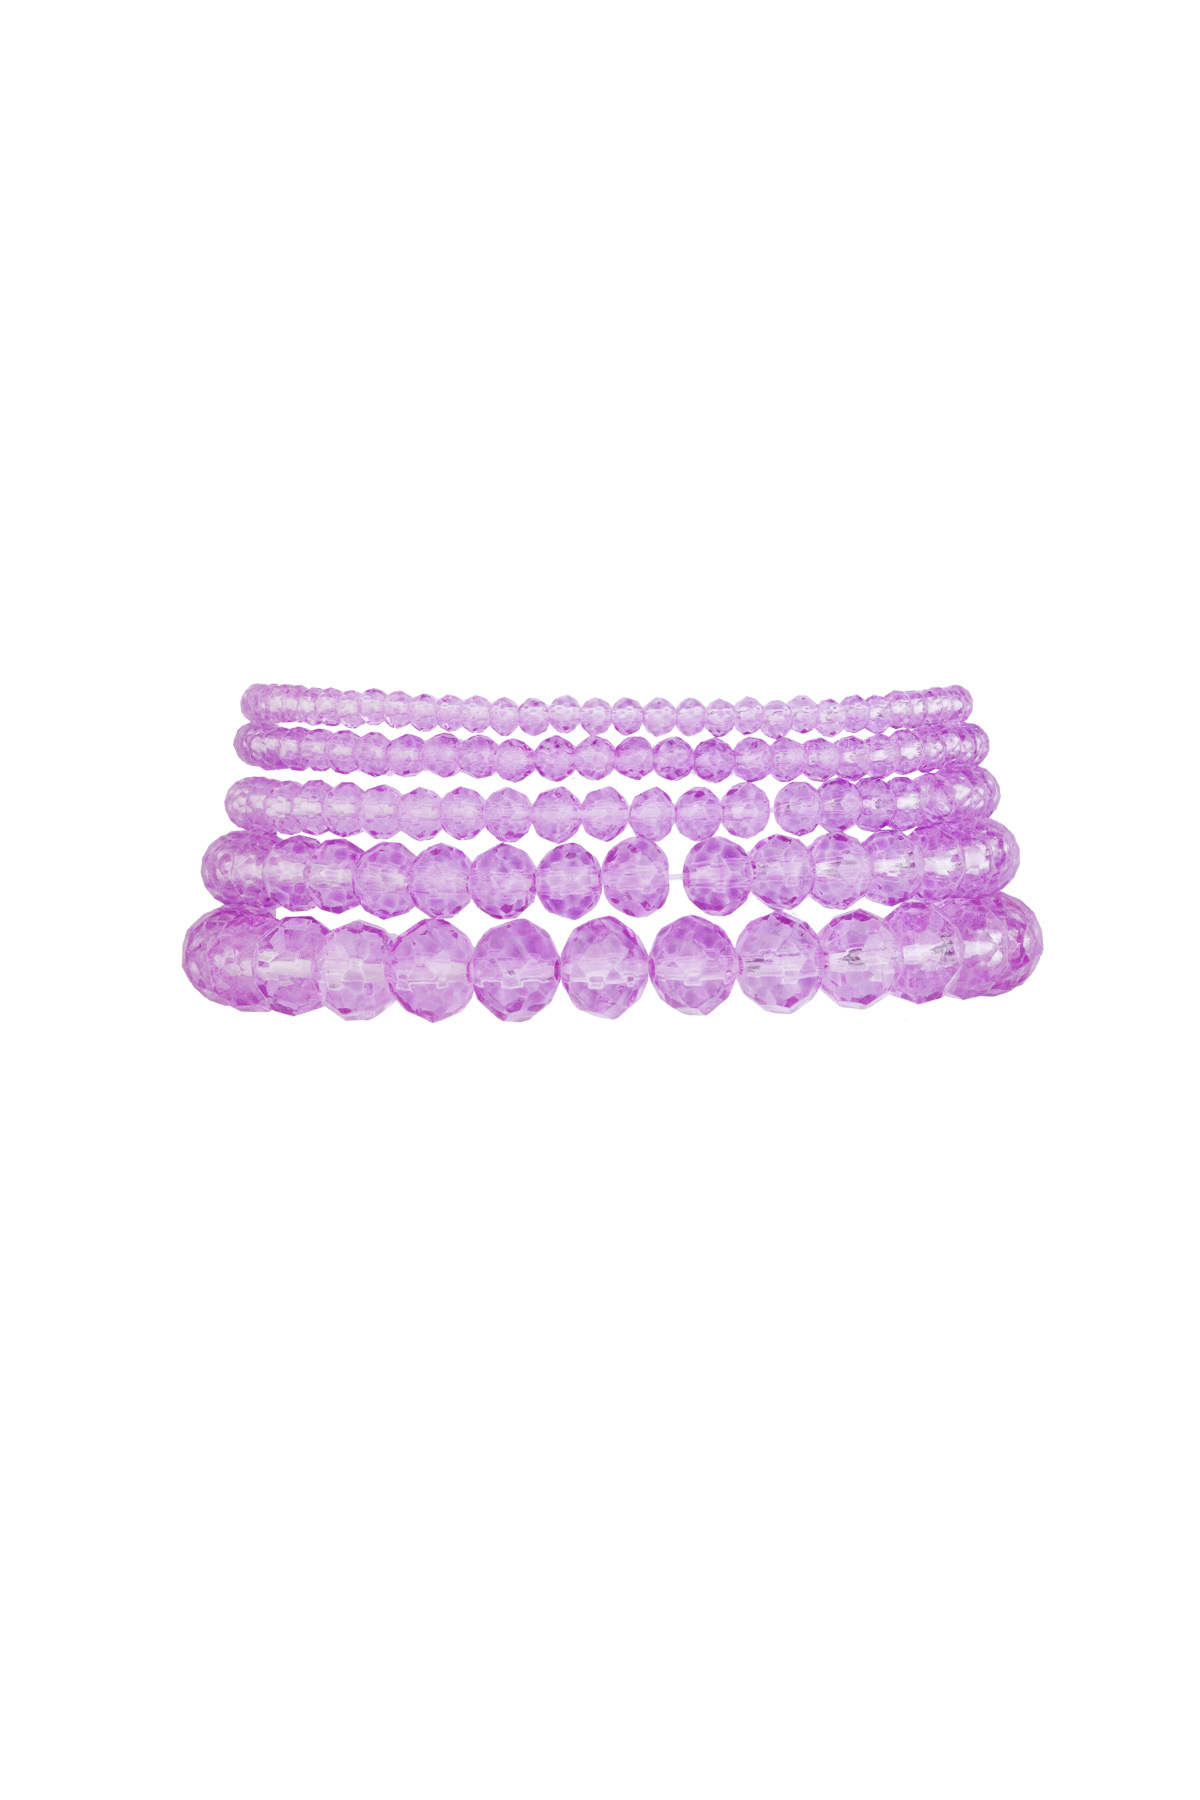 Lote de 5 pulseras de cristal violeta - violeta claro